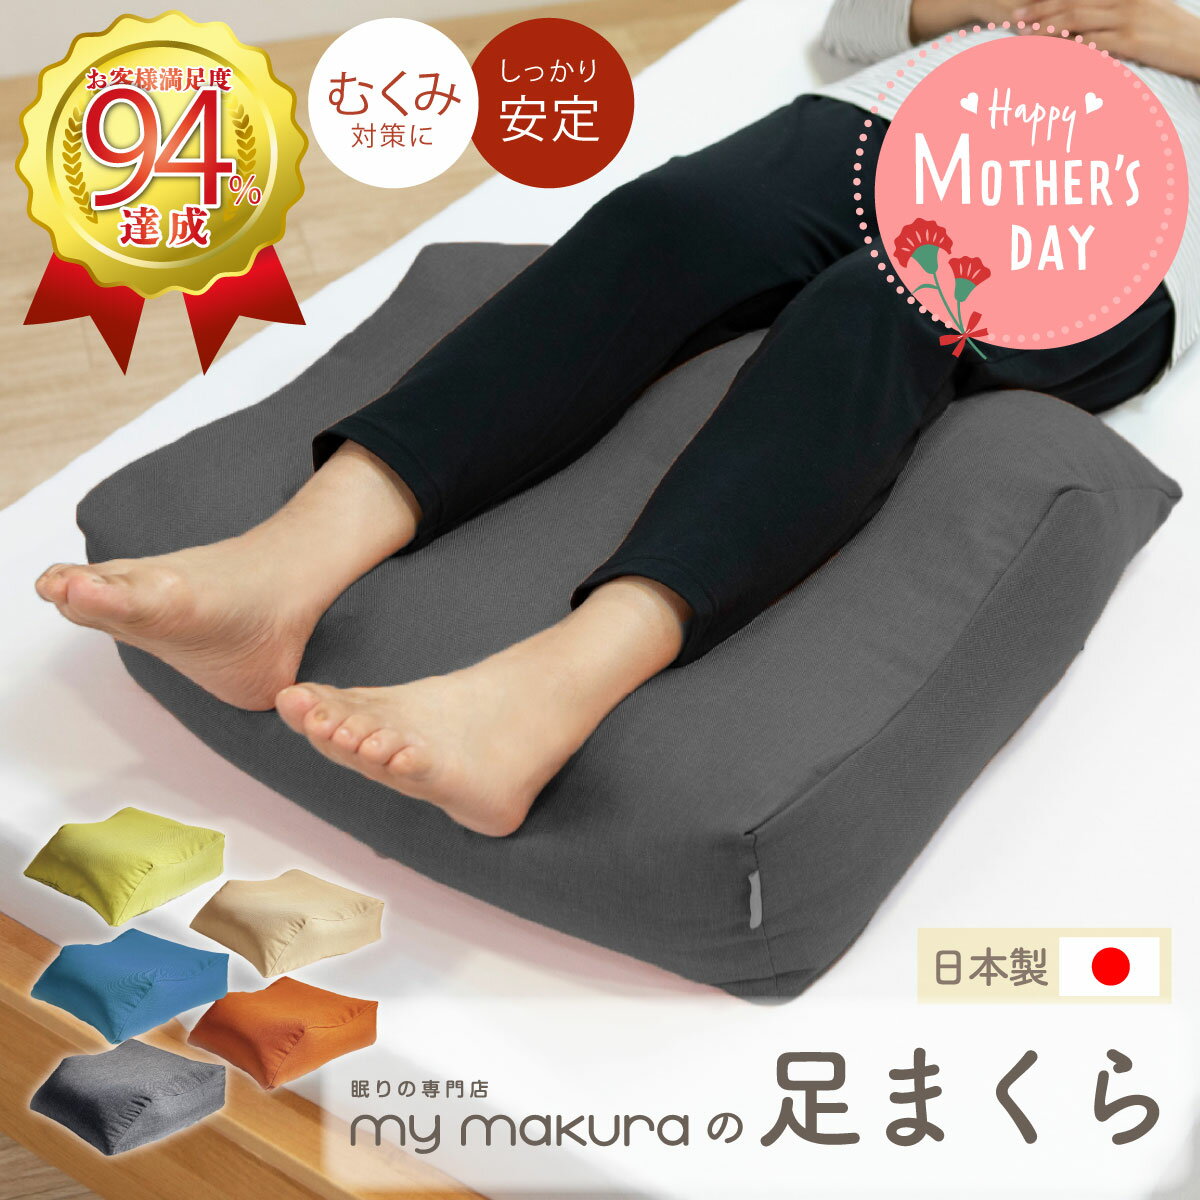 エアロフロー「足まくら」 送料無料 枕 足枕 モールドウレタン 高さ調整 日本製 【D】